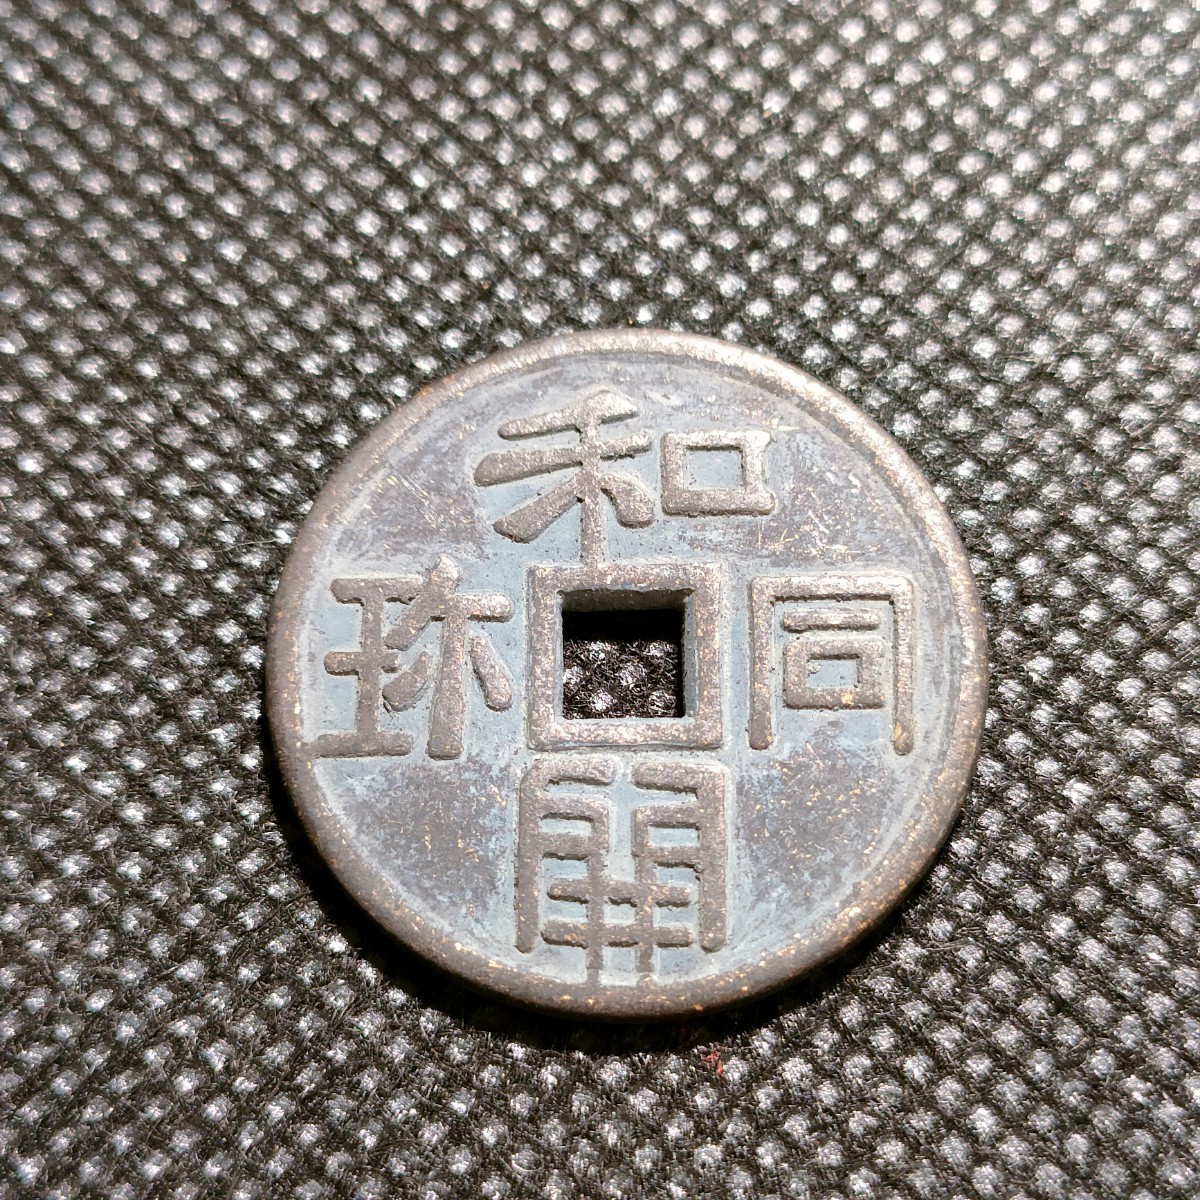 6027 日本古銭 和同開珎 コインの画像1